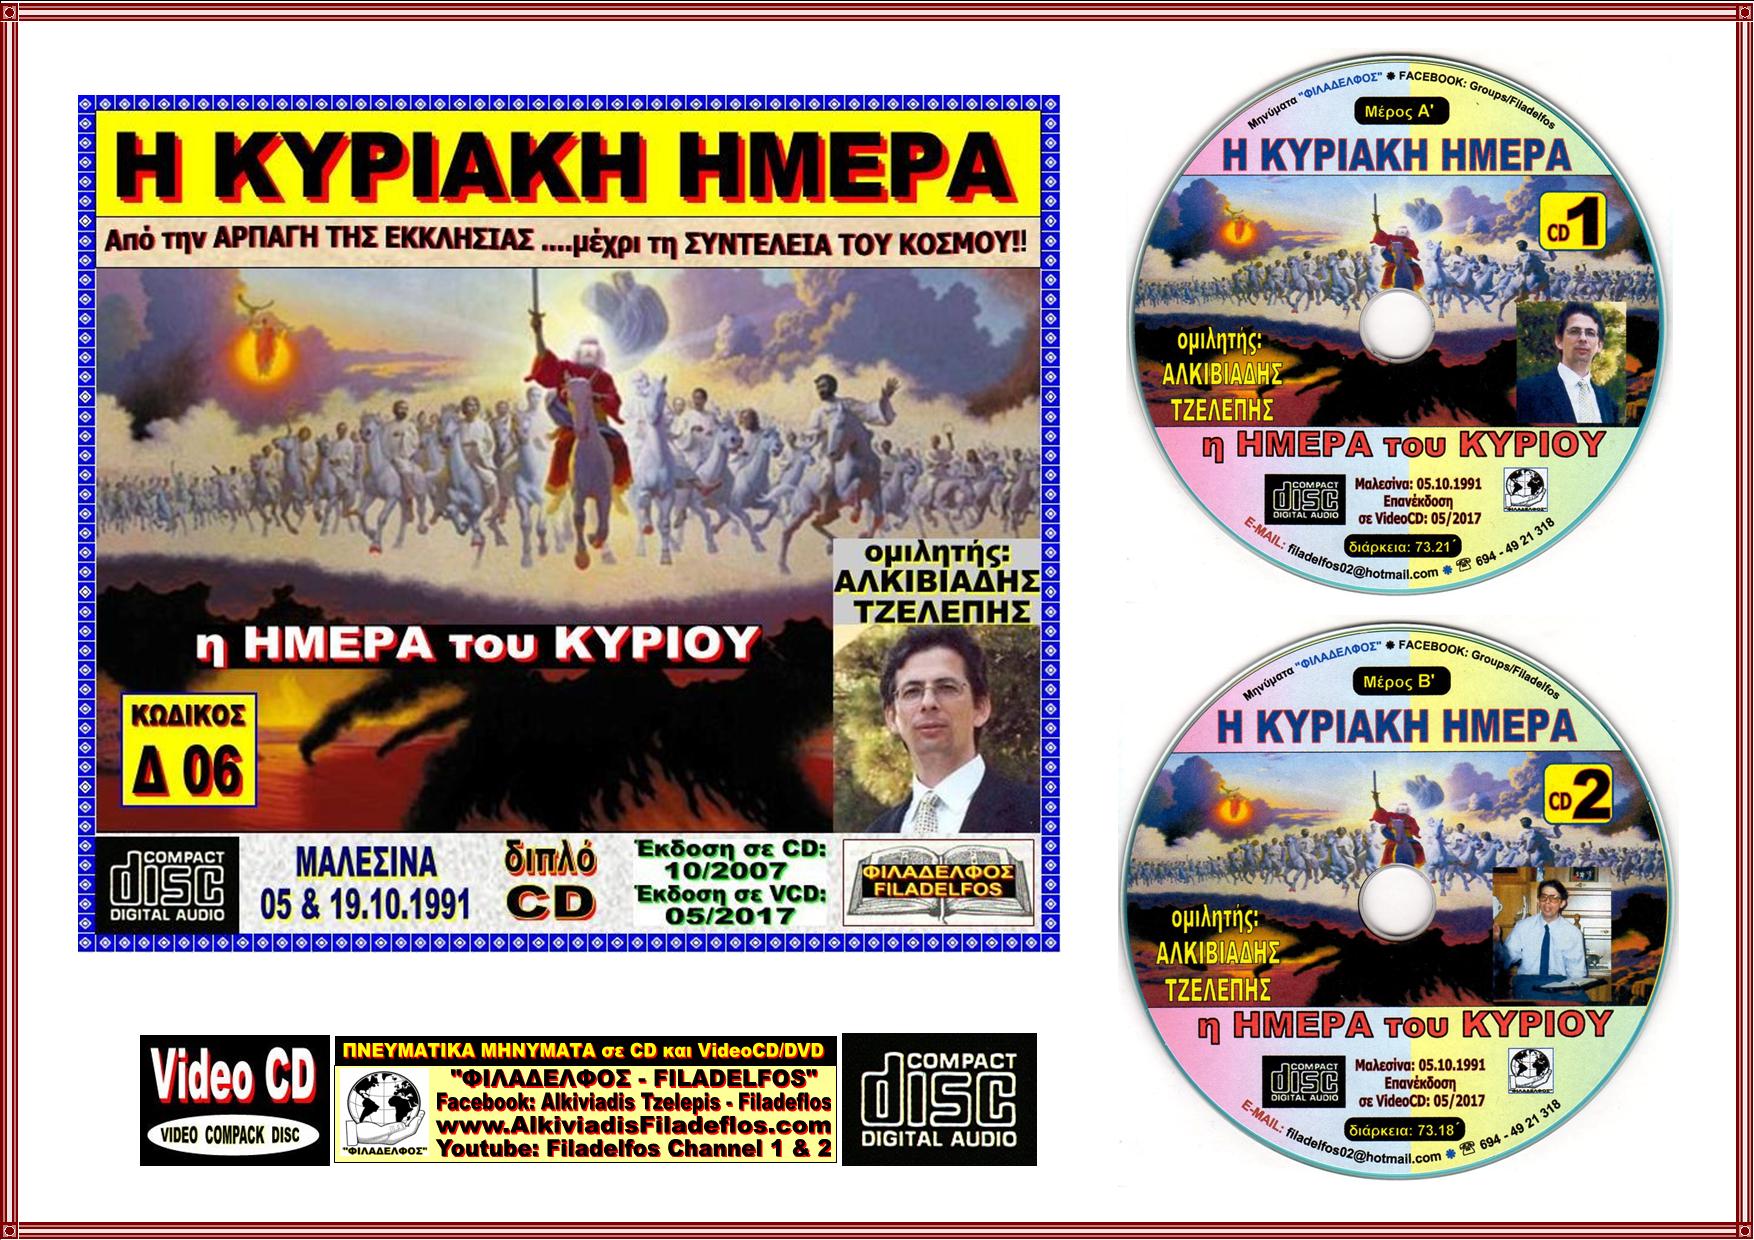 KYPIAKH HMEPA CD